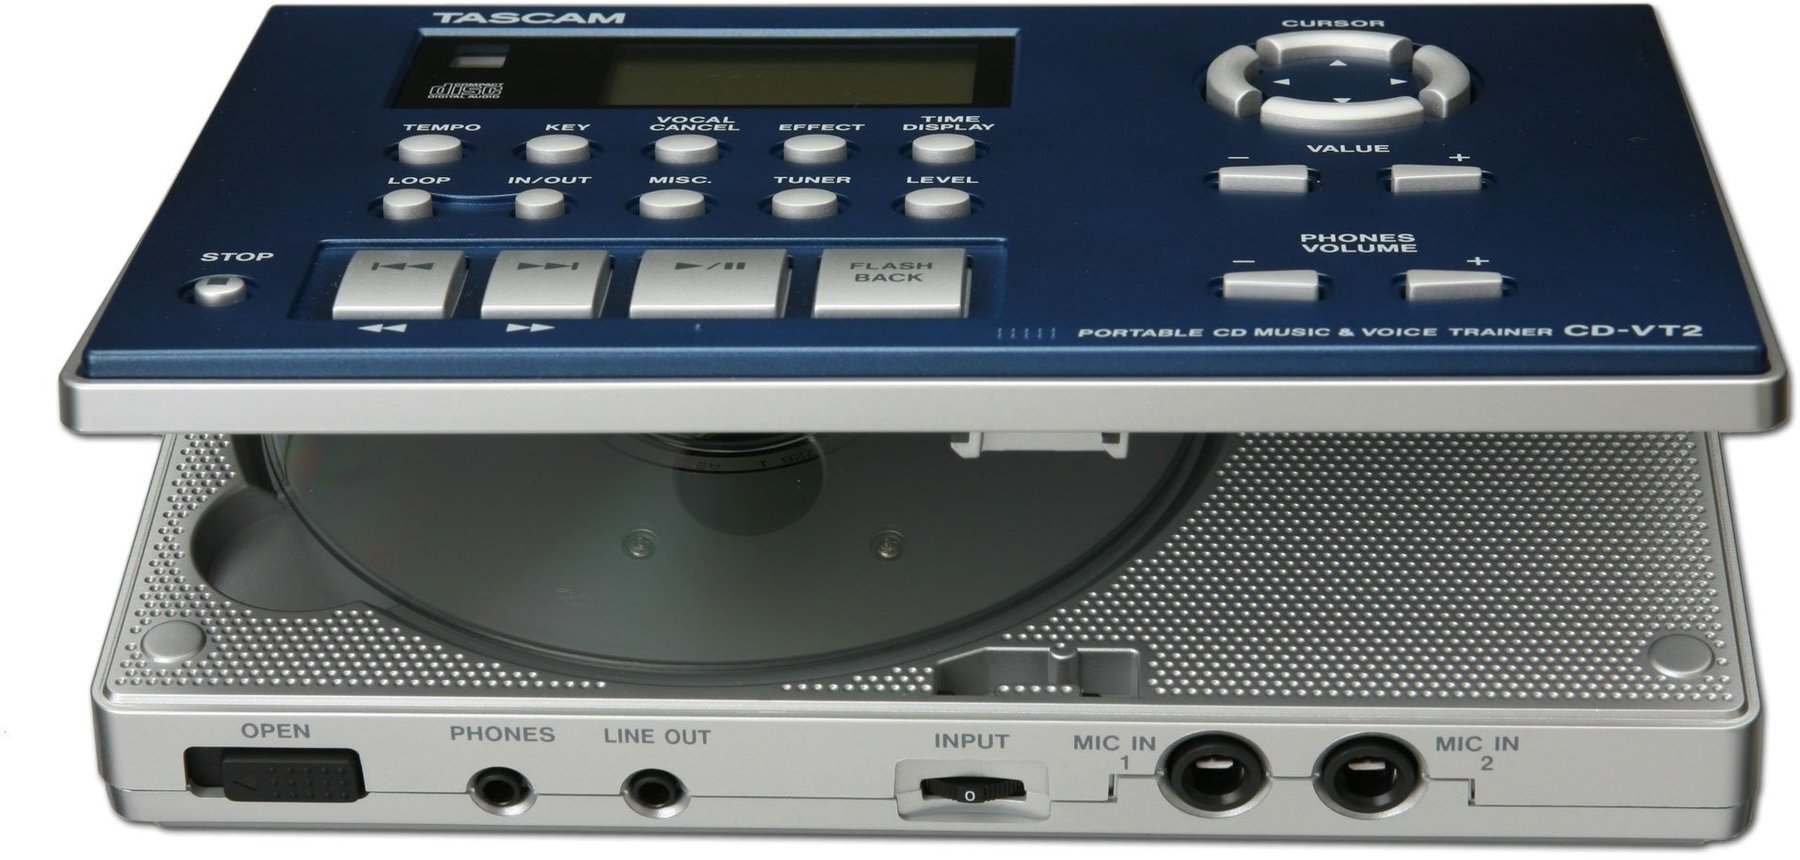 Rack DJ Player Tascam CD-VT2